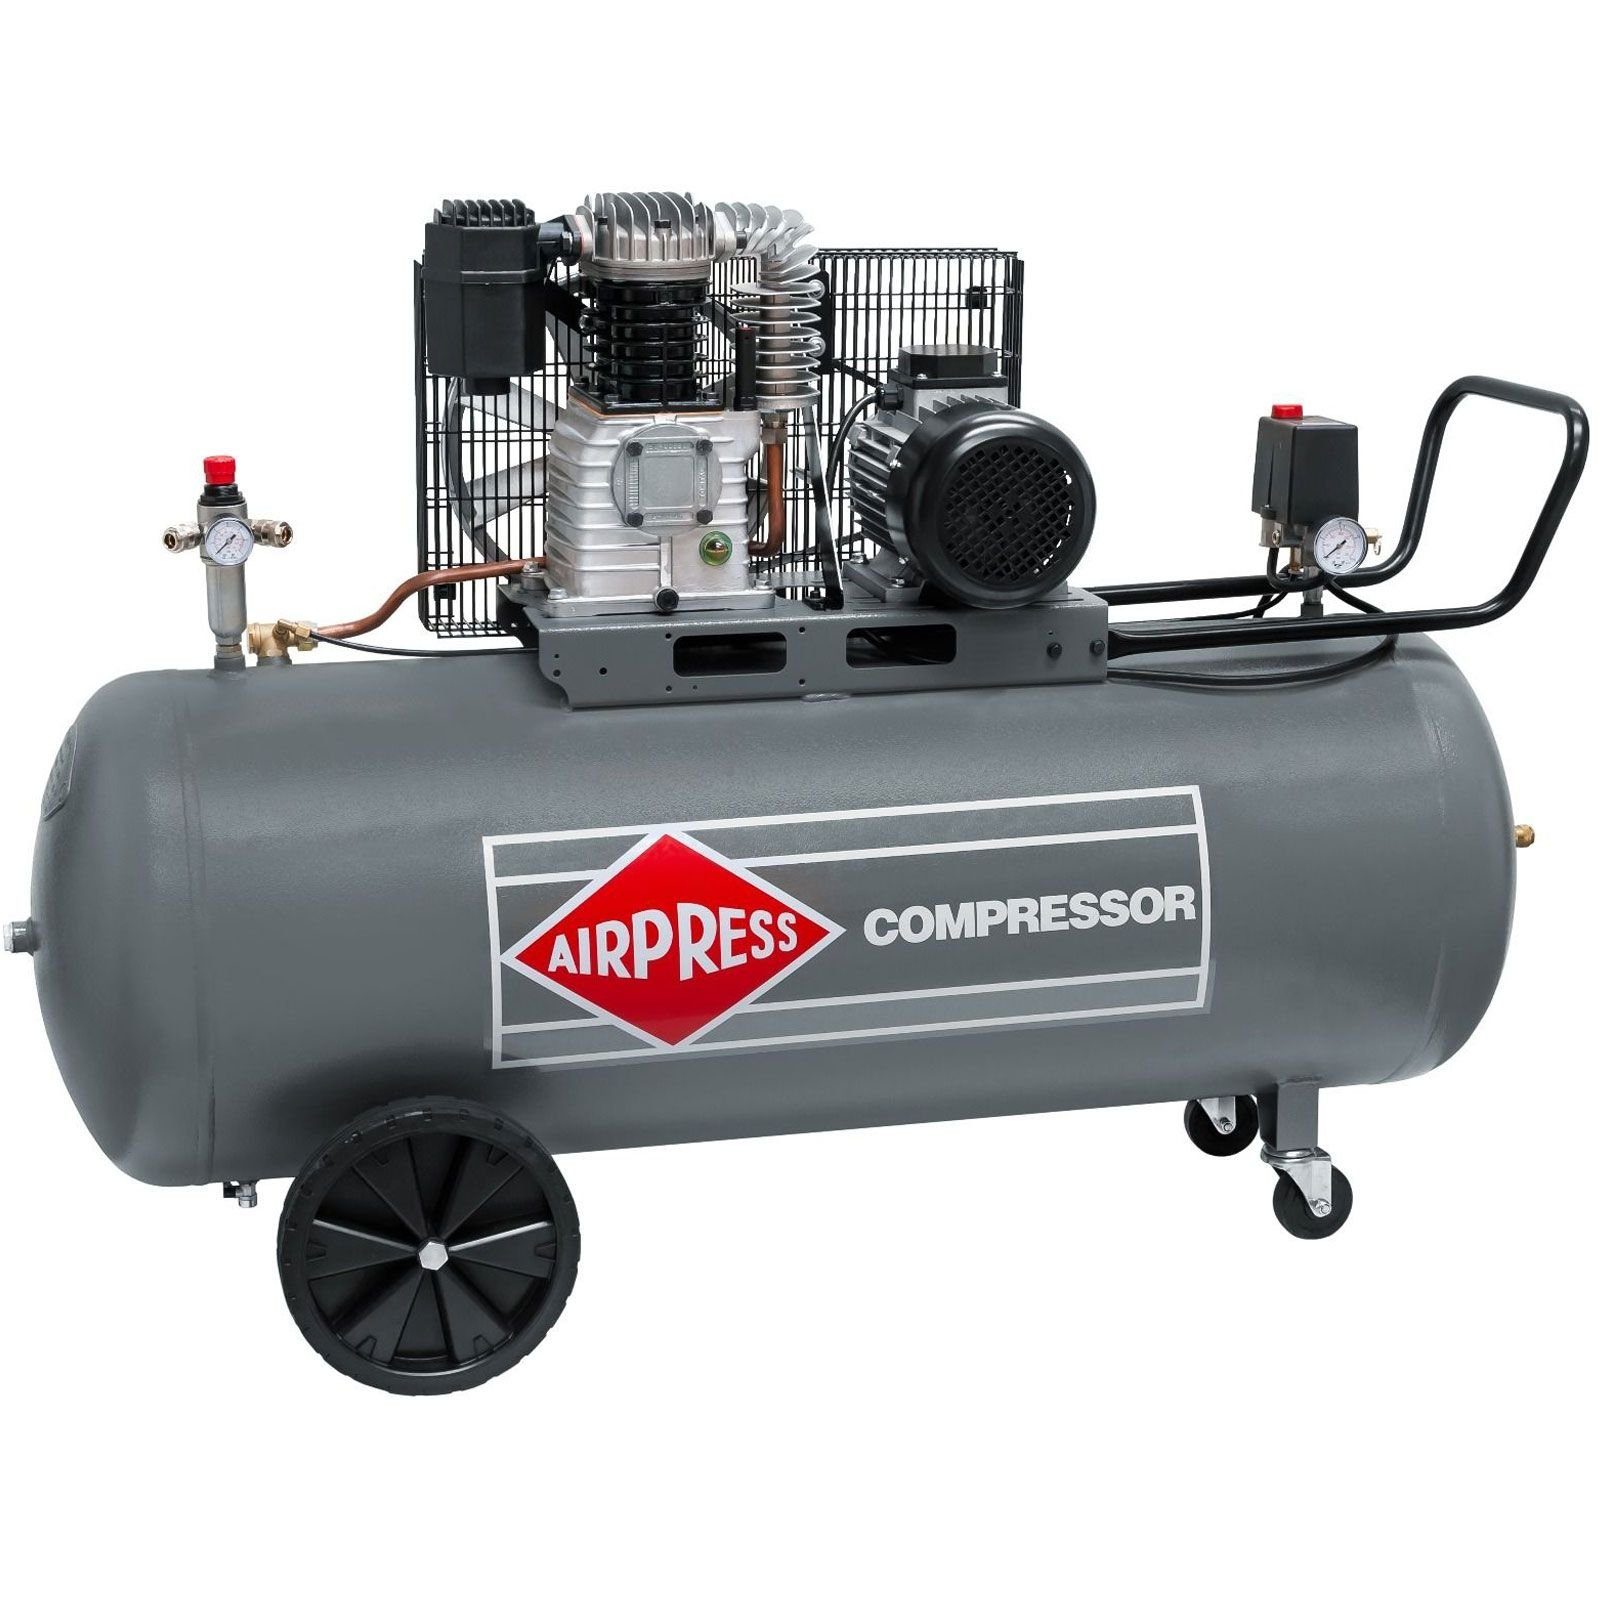 Airpress Kompressor Druckluft- Kompressor 4,0 PS 200 Liter 10 bar HK600-200 Typ 360564, max. 10 bar, 200 l, 1 Stück